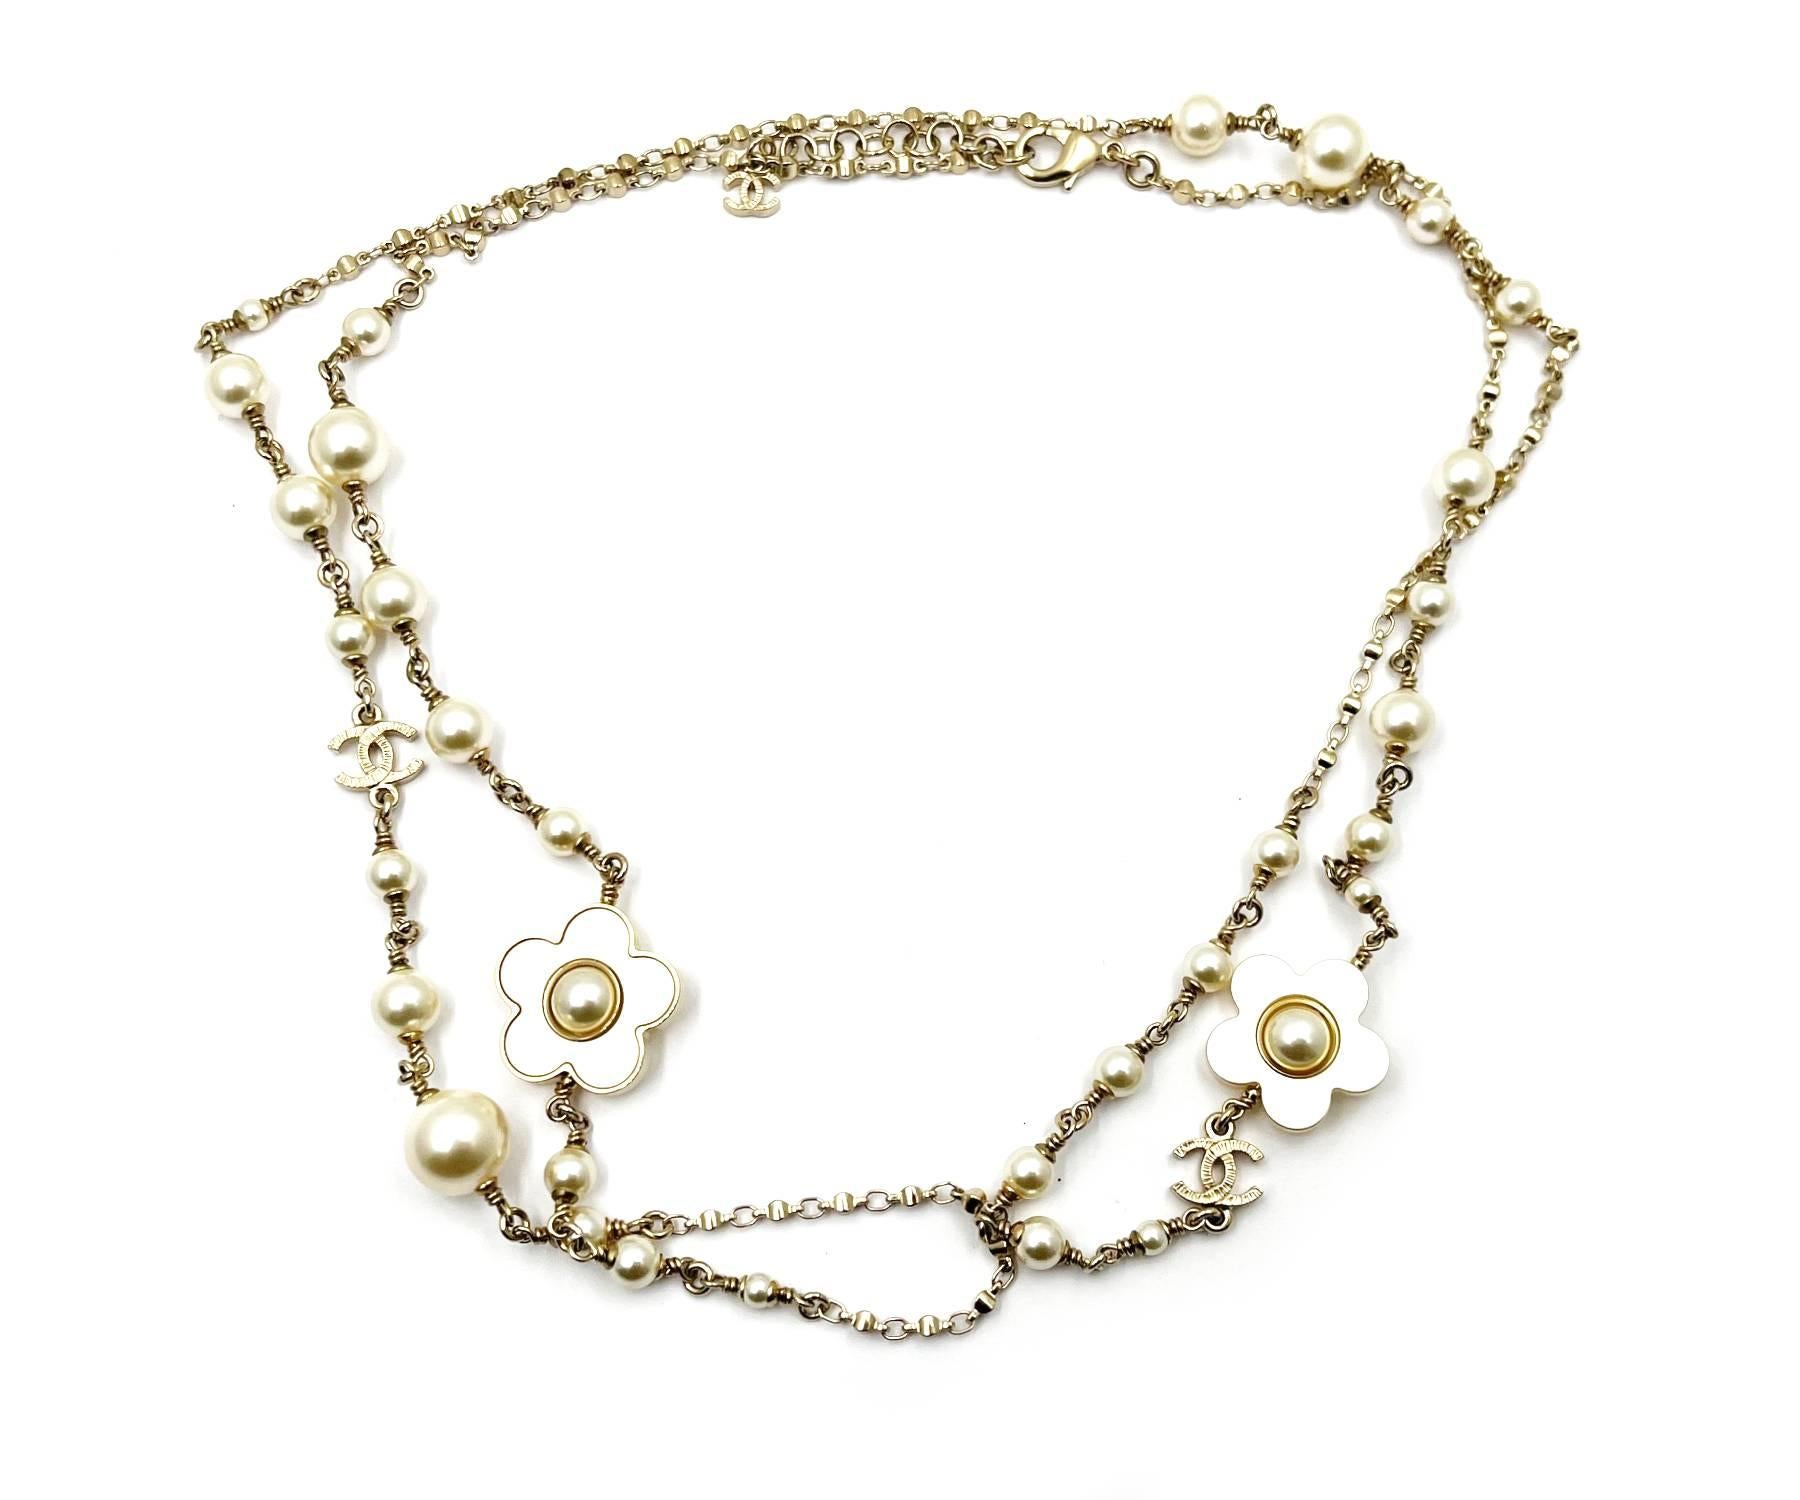 Chanel Gold CC Goldrahmen Weiß Blume Perle Lange Halskette

*Markiert 18
*Hergestellt in Frankreich
*Mit Originalverpackung, Tasche und Booklet

-Die Gesamtlänge beträgt etwa 44